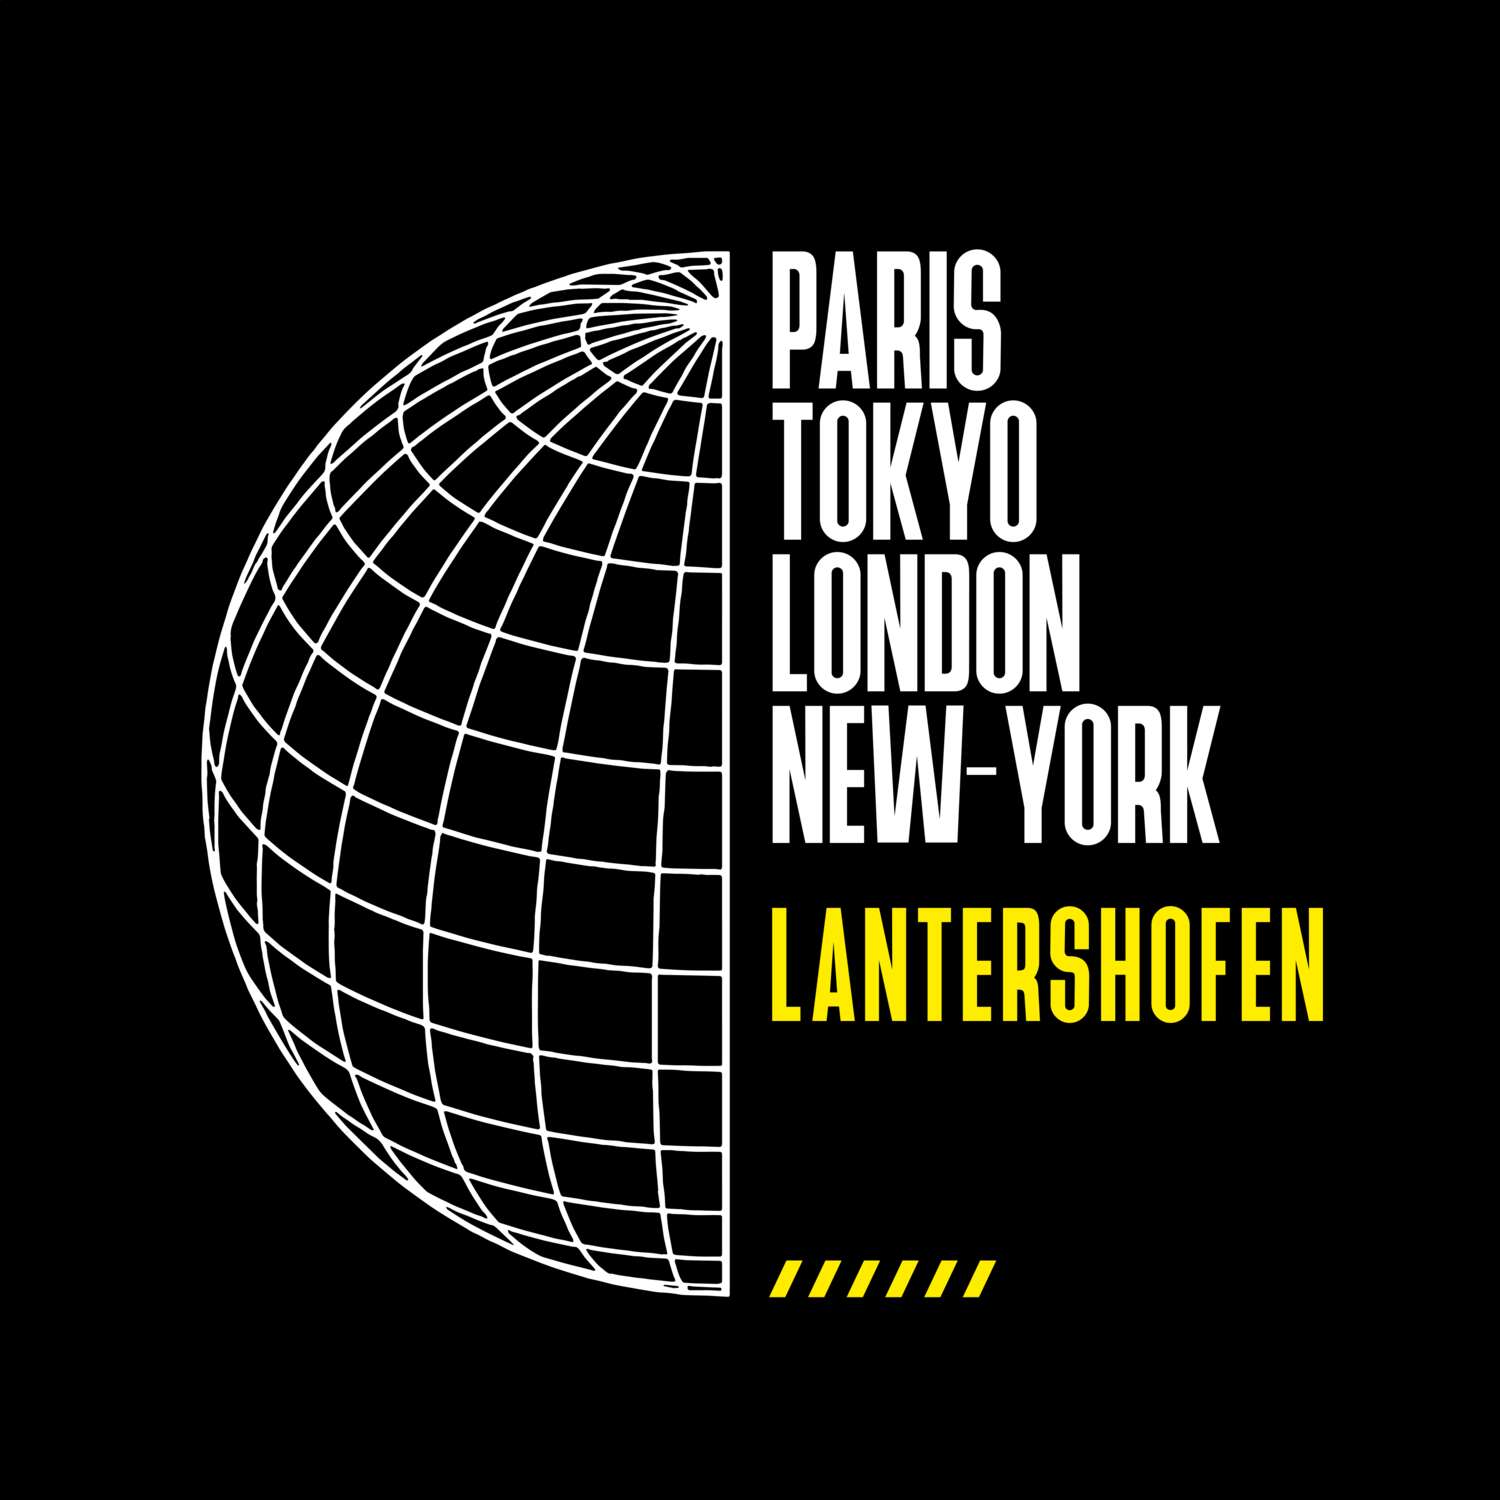 Lantershofen T-Shirt »Paris Tokyo London«